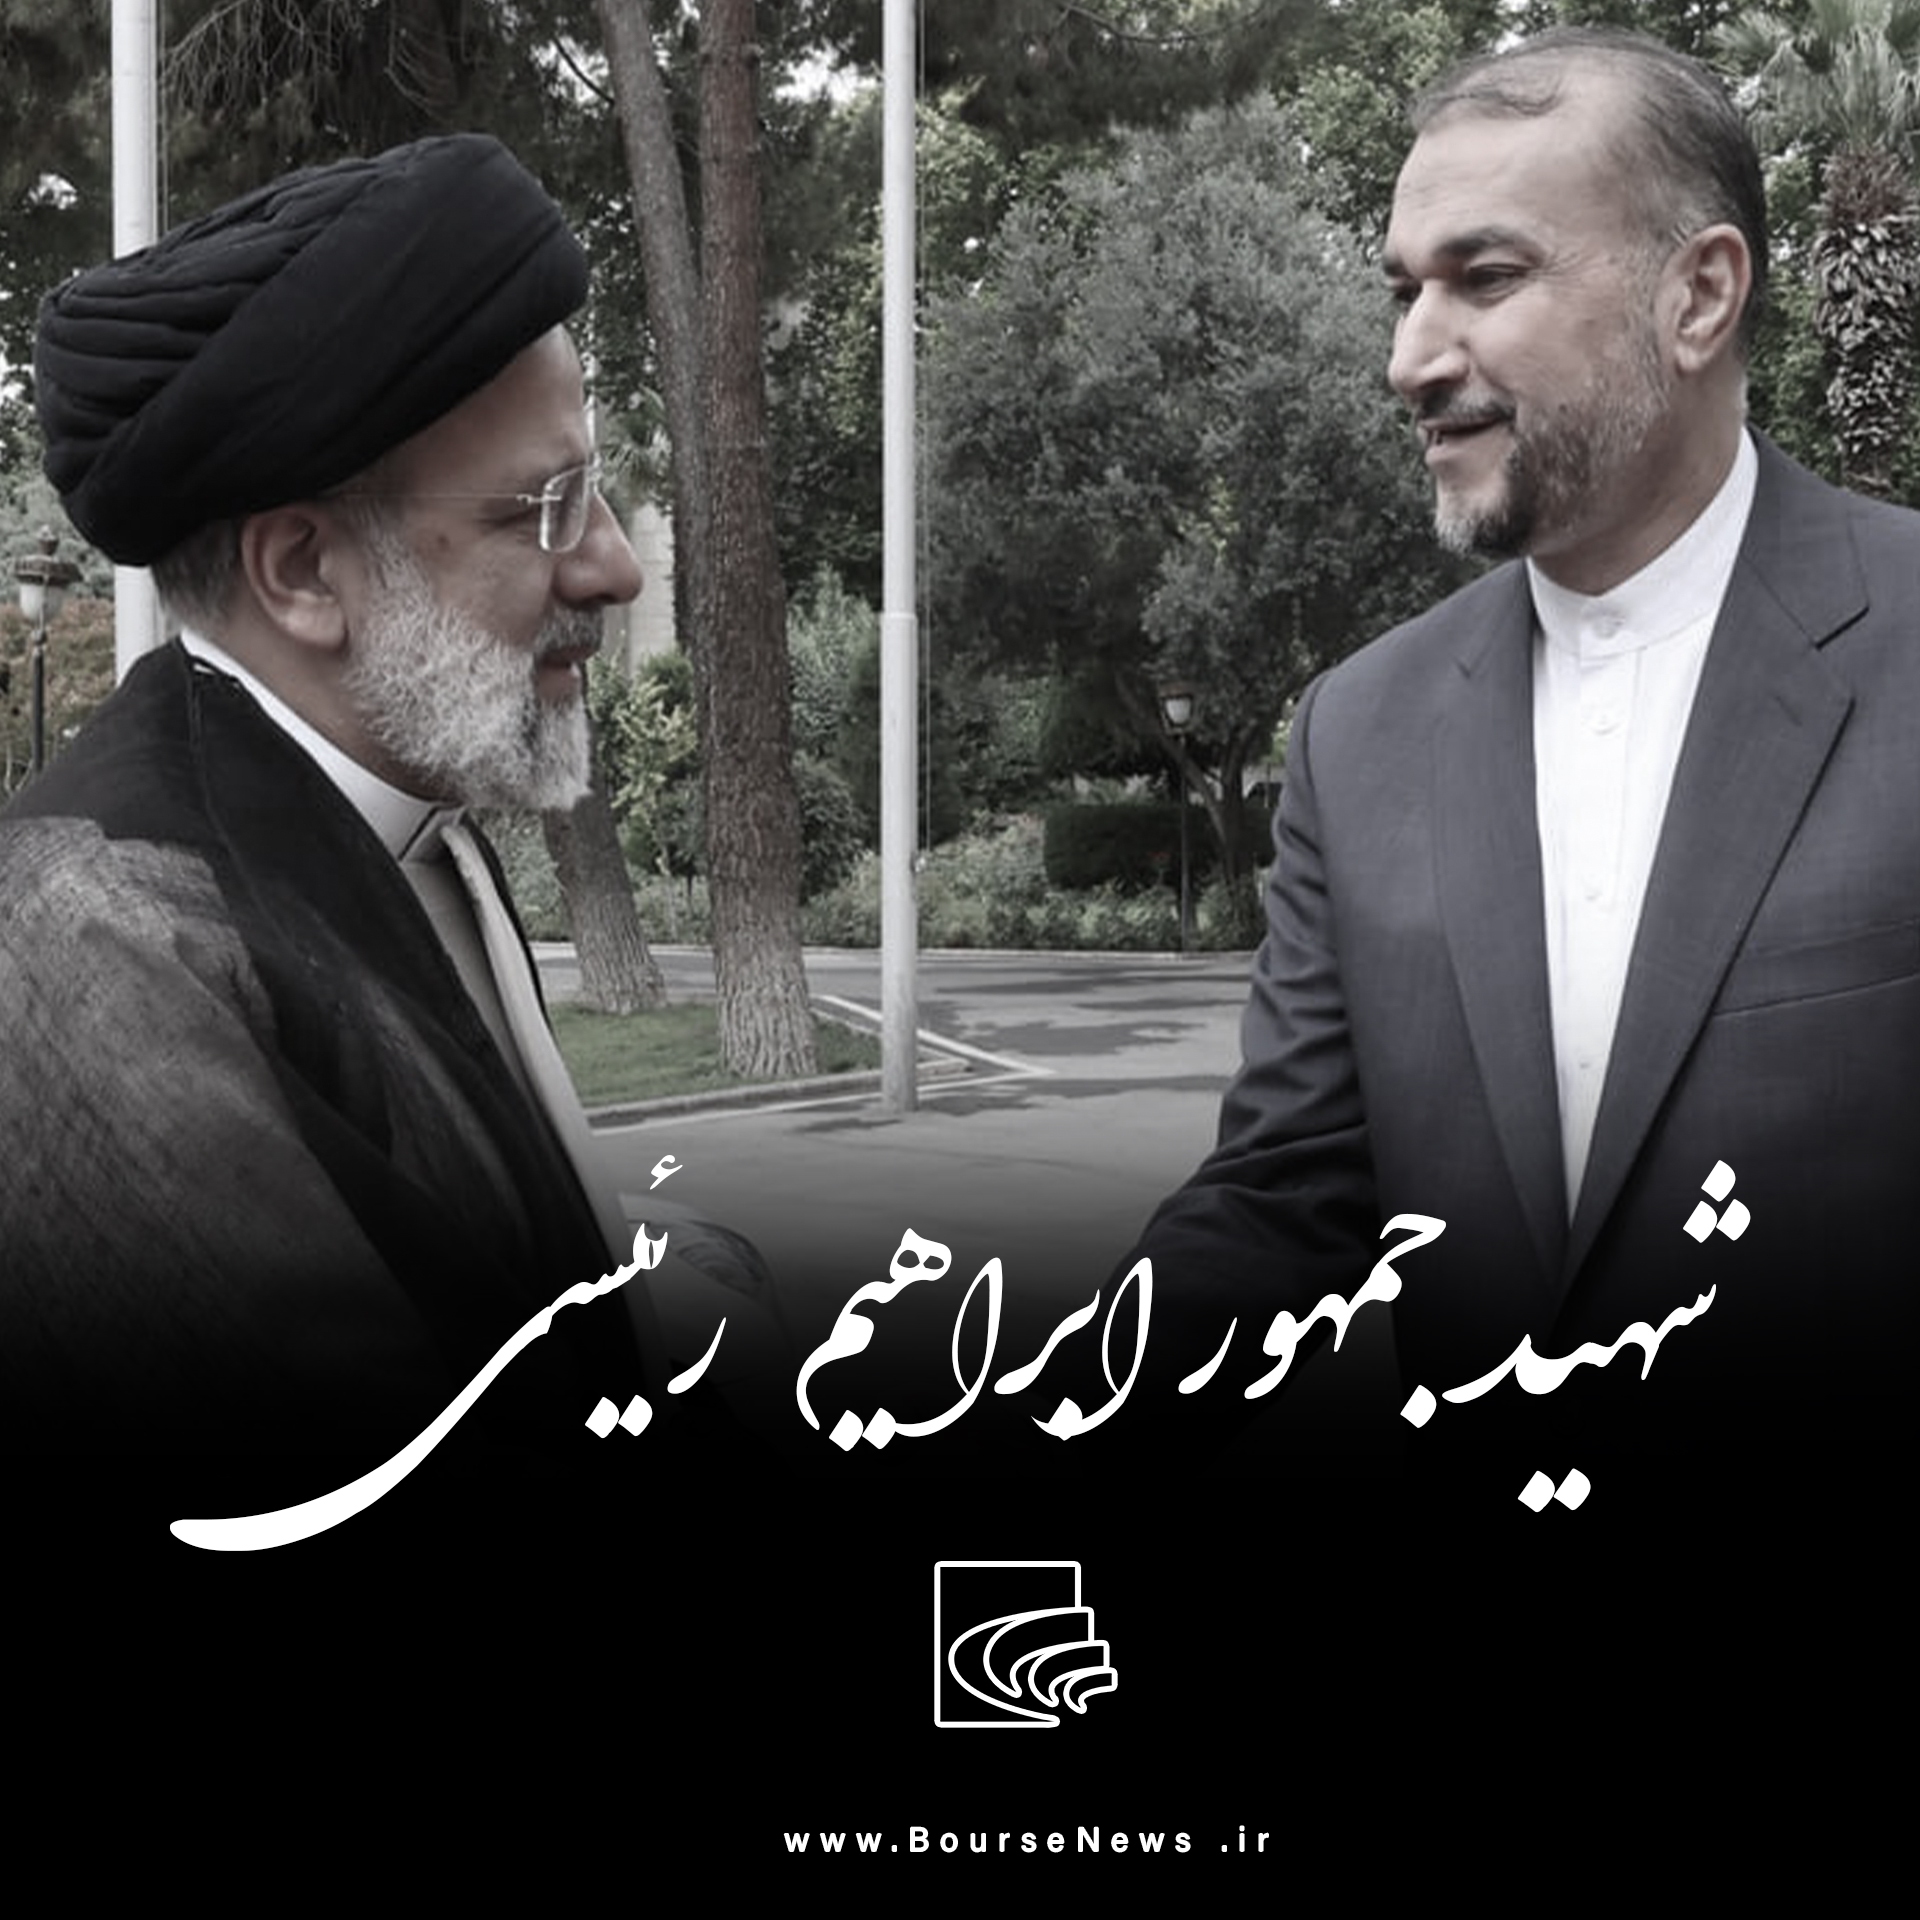 هشتمین رئیس جمهور ایران شهید شد